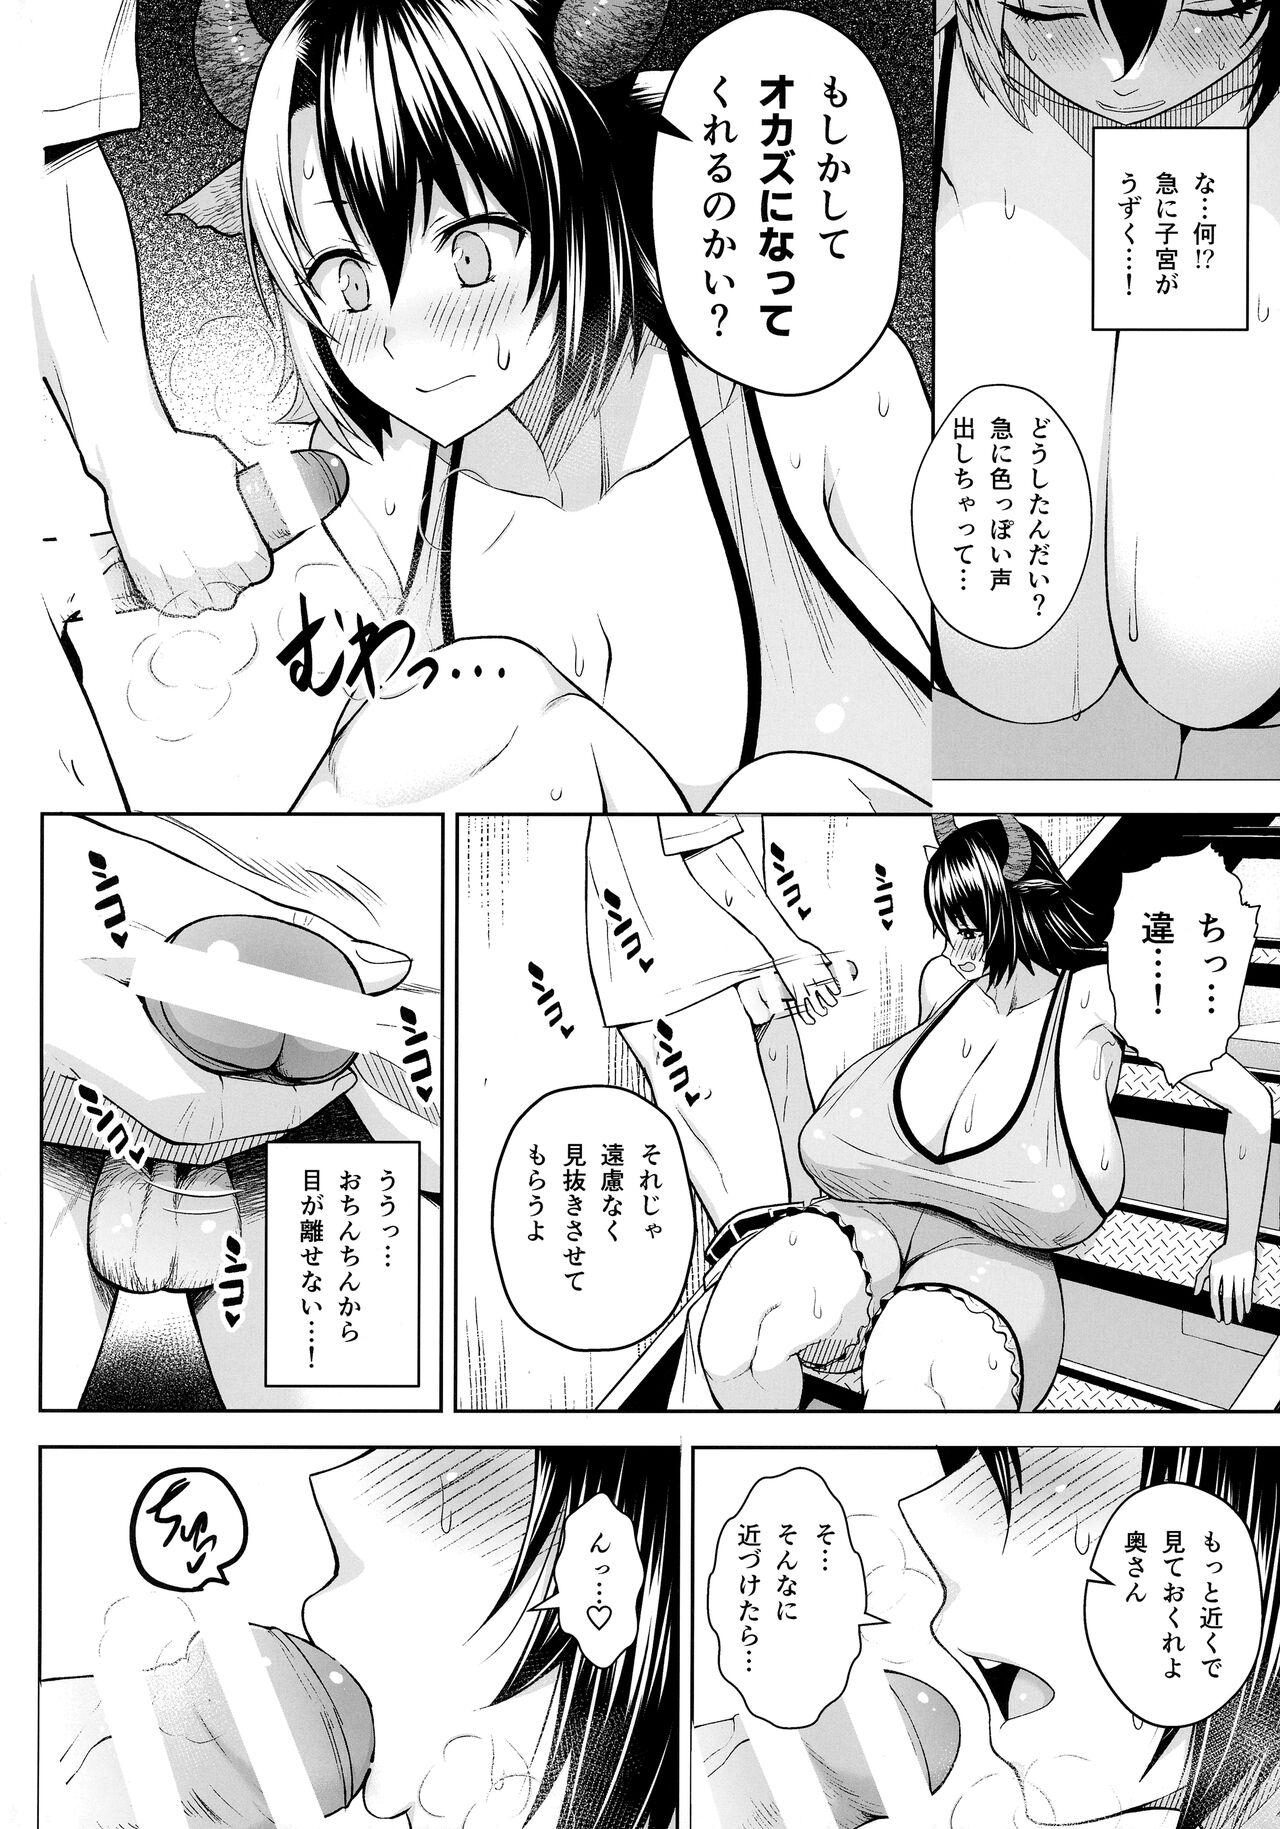 Affair Oku-san no Oppai ga Dekasugiru noga Warui! 6 - Touhou project Cock - Page 3